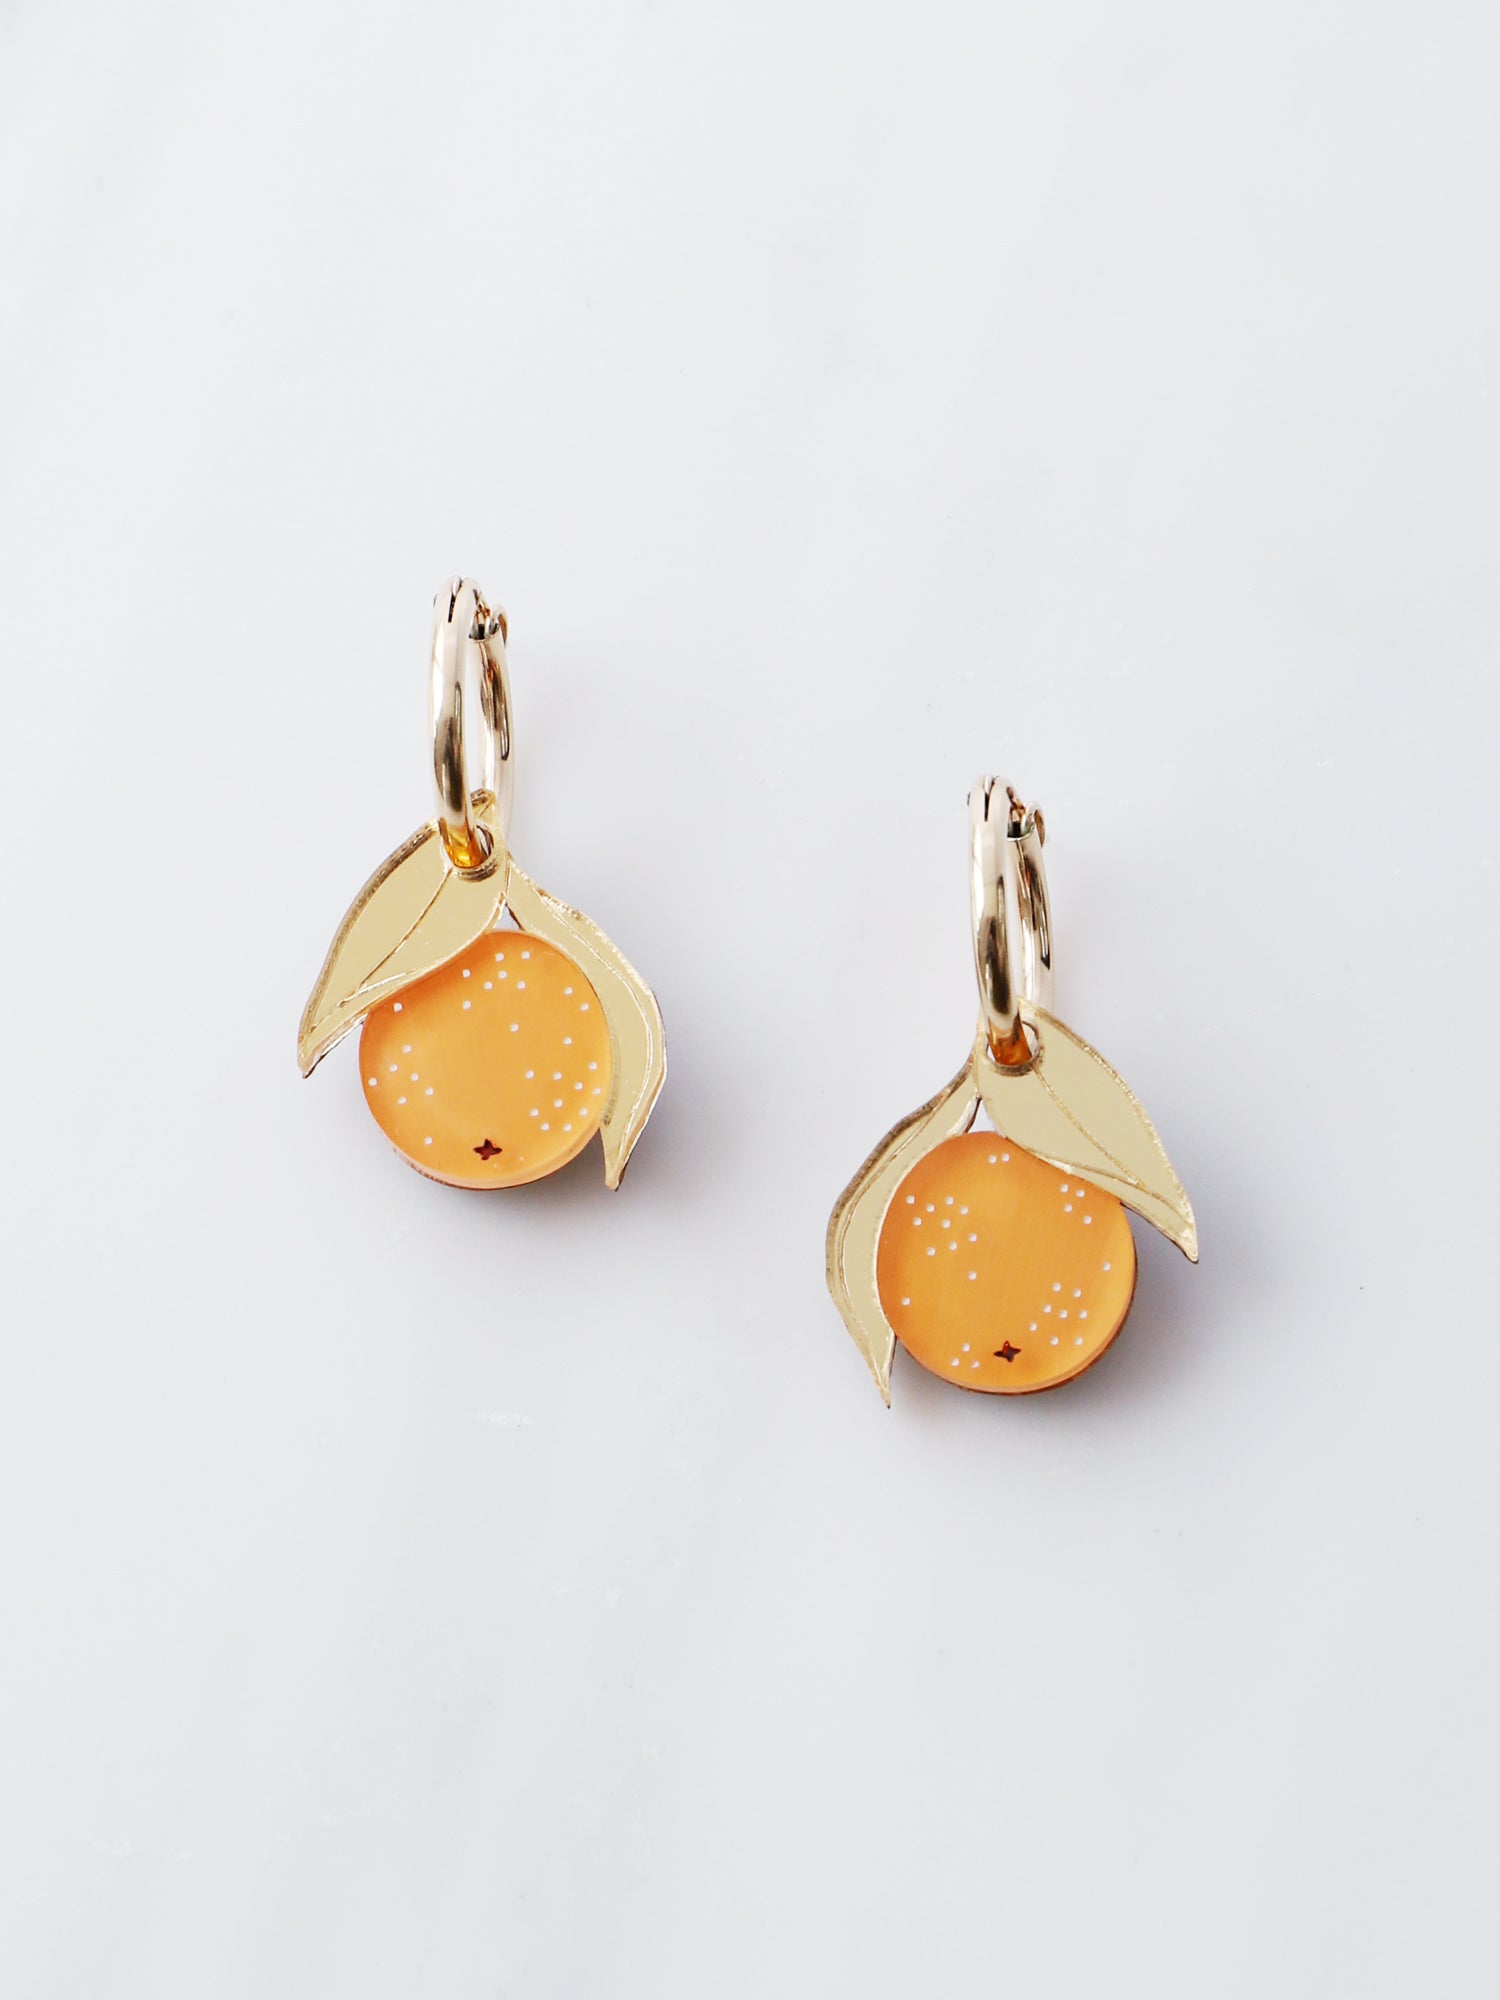 Mini Orange Hoops. Original jewellery handmade in the U.K. by Wolf & Moon.